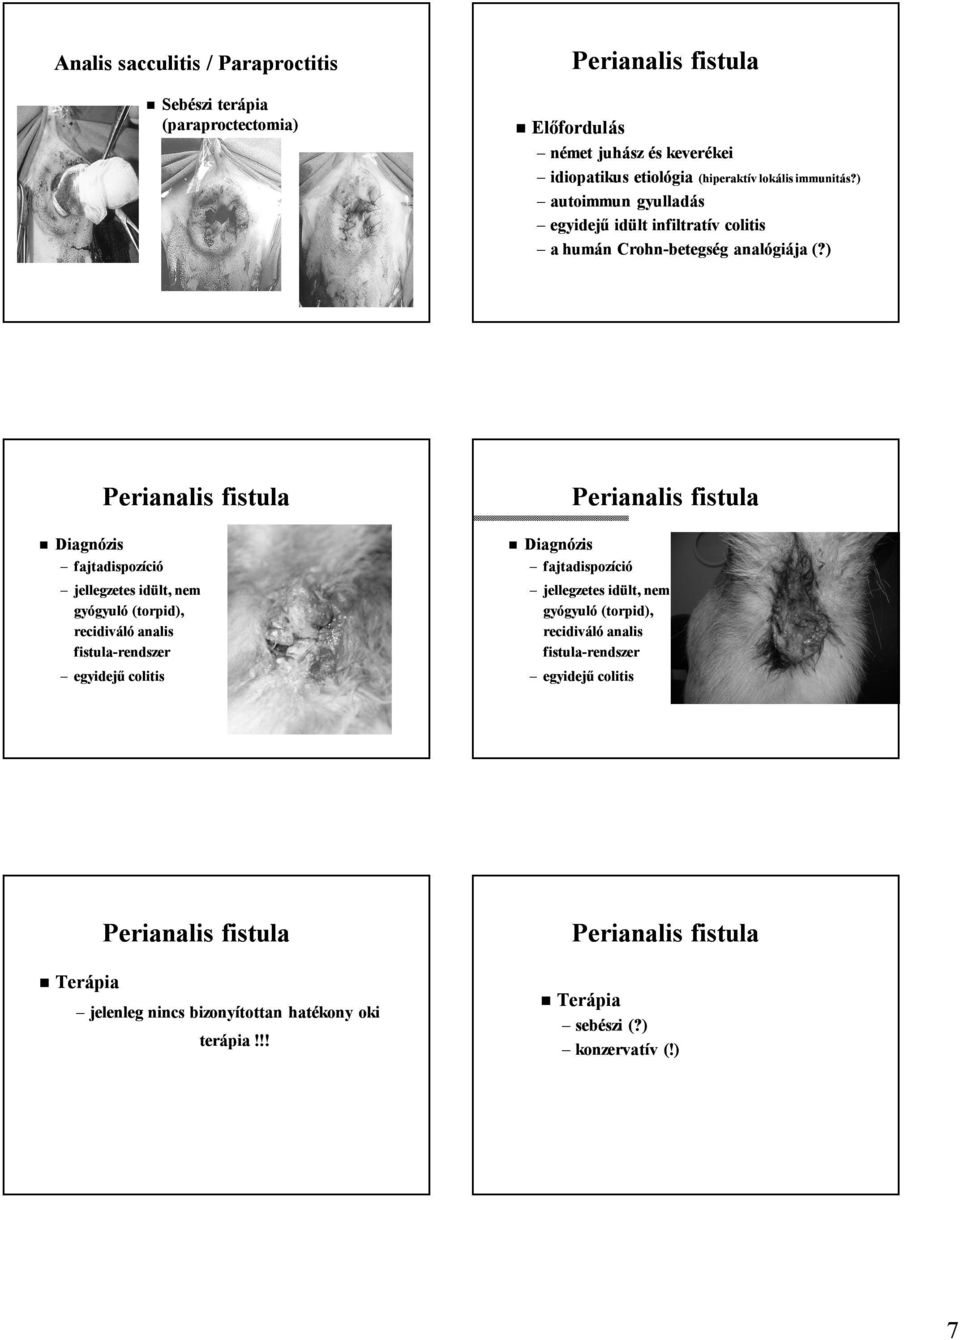 ) Diagnózis Perianalis fistula fajtadispozíció jellegzetes idült, nem gyógyuló (torpid), recidiváló analis fistula-rendszer egyidejű colitis Diagnózis Perianalis